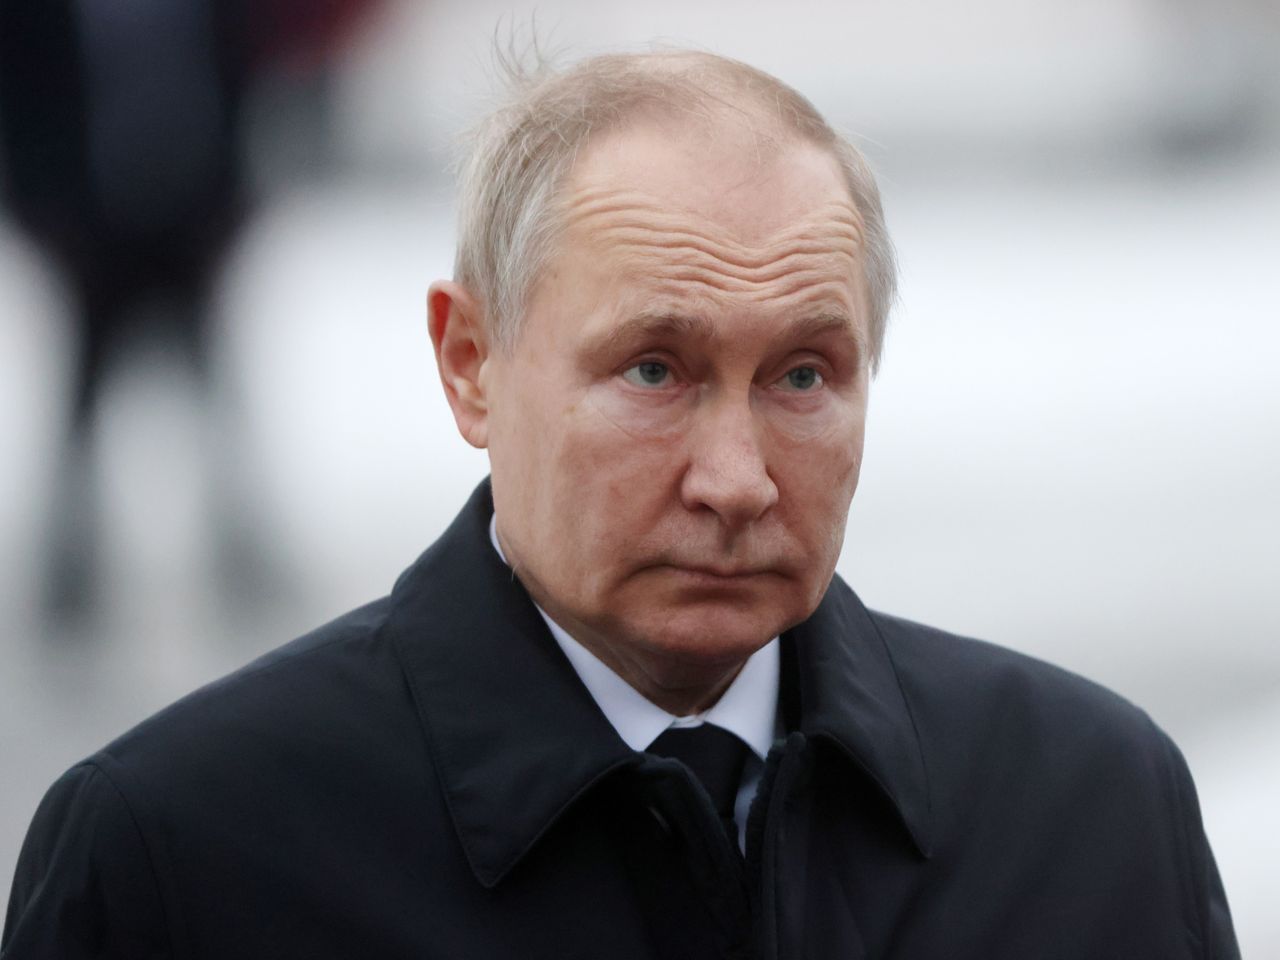 Władimir Putin jest prezydentem Rosji niemal cały czas od 2000 roku